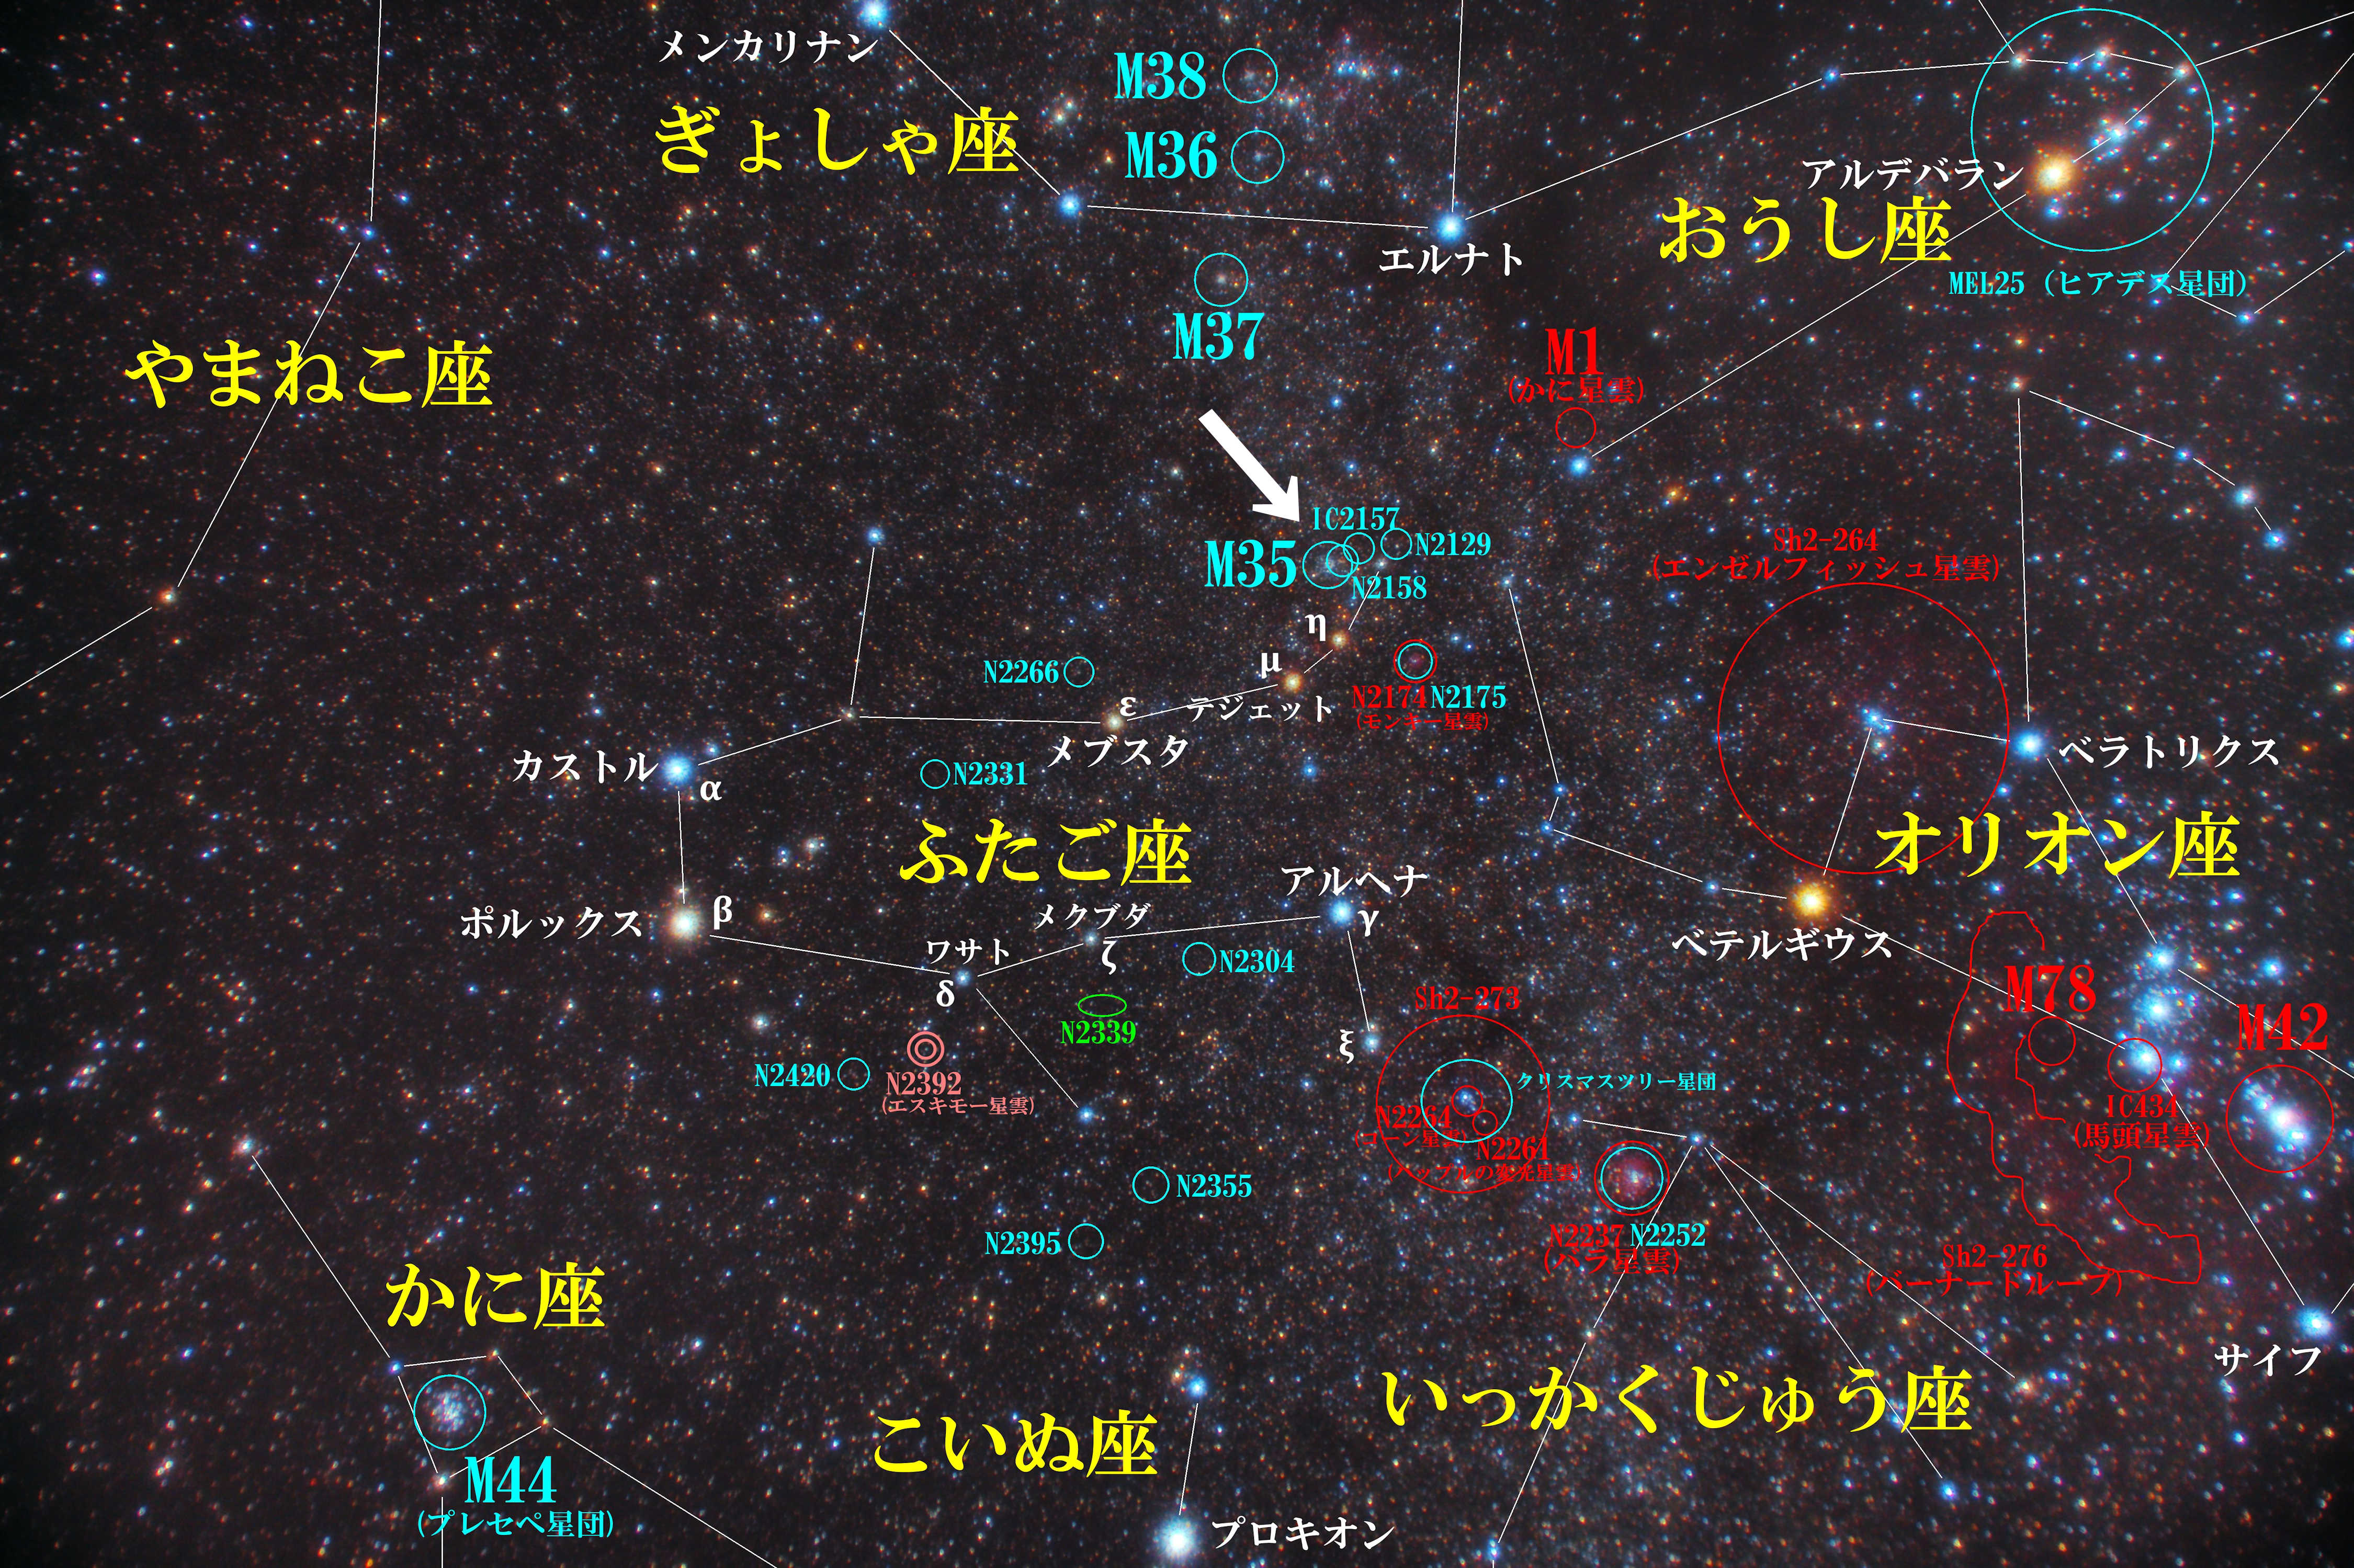 春夏秋冬 星座別のメシエ天体写真一覧と星図